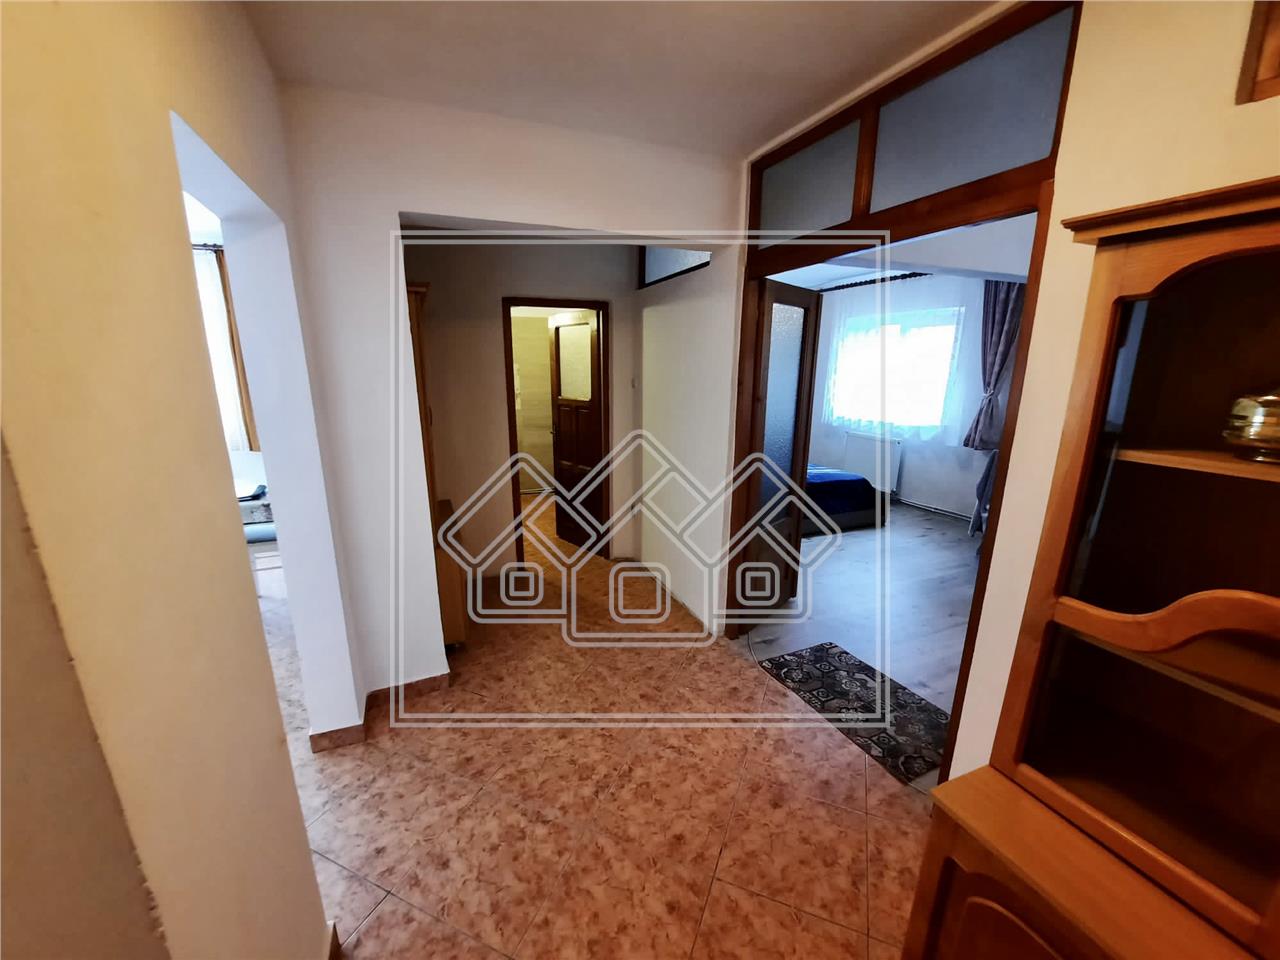 Apartament 2 rooms for sale in Alba Iulia